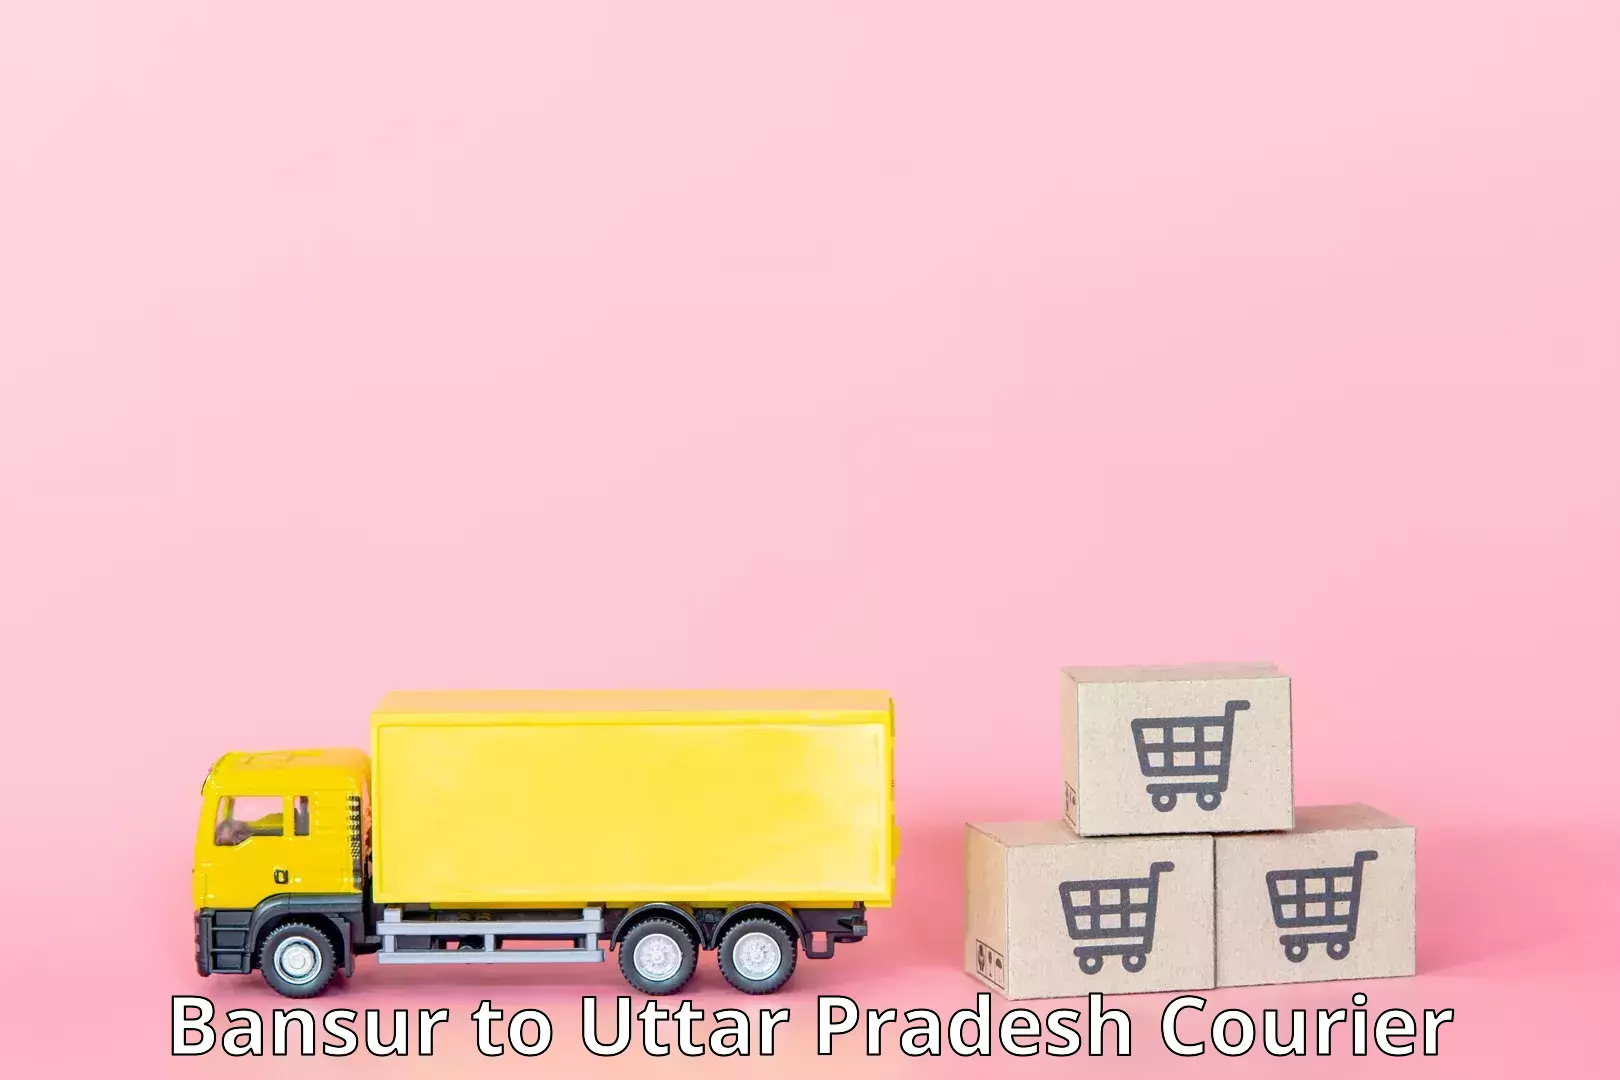 Advanced courier platforms in Bansur to Uttar Pradesh